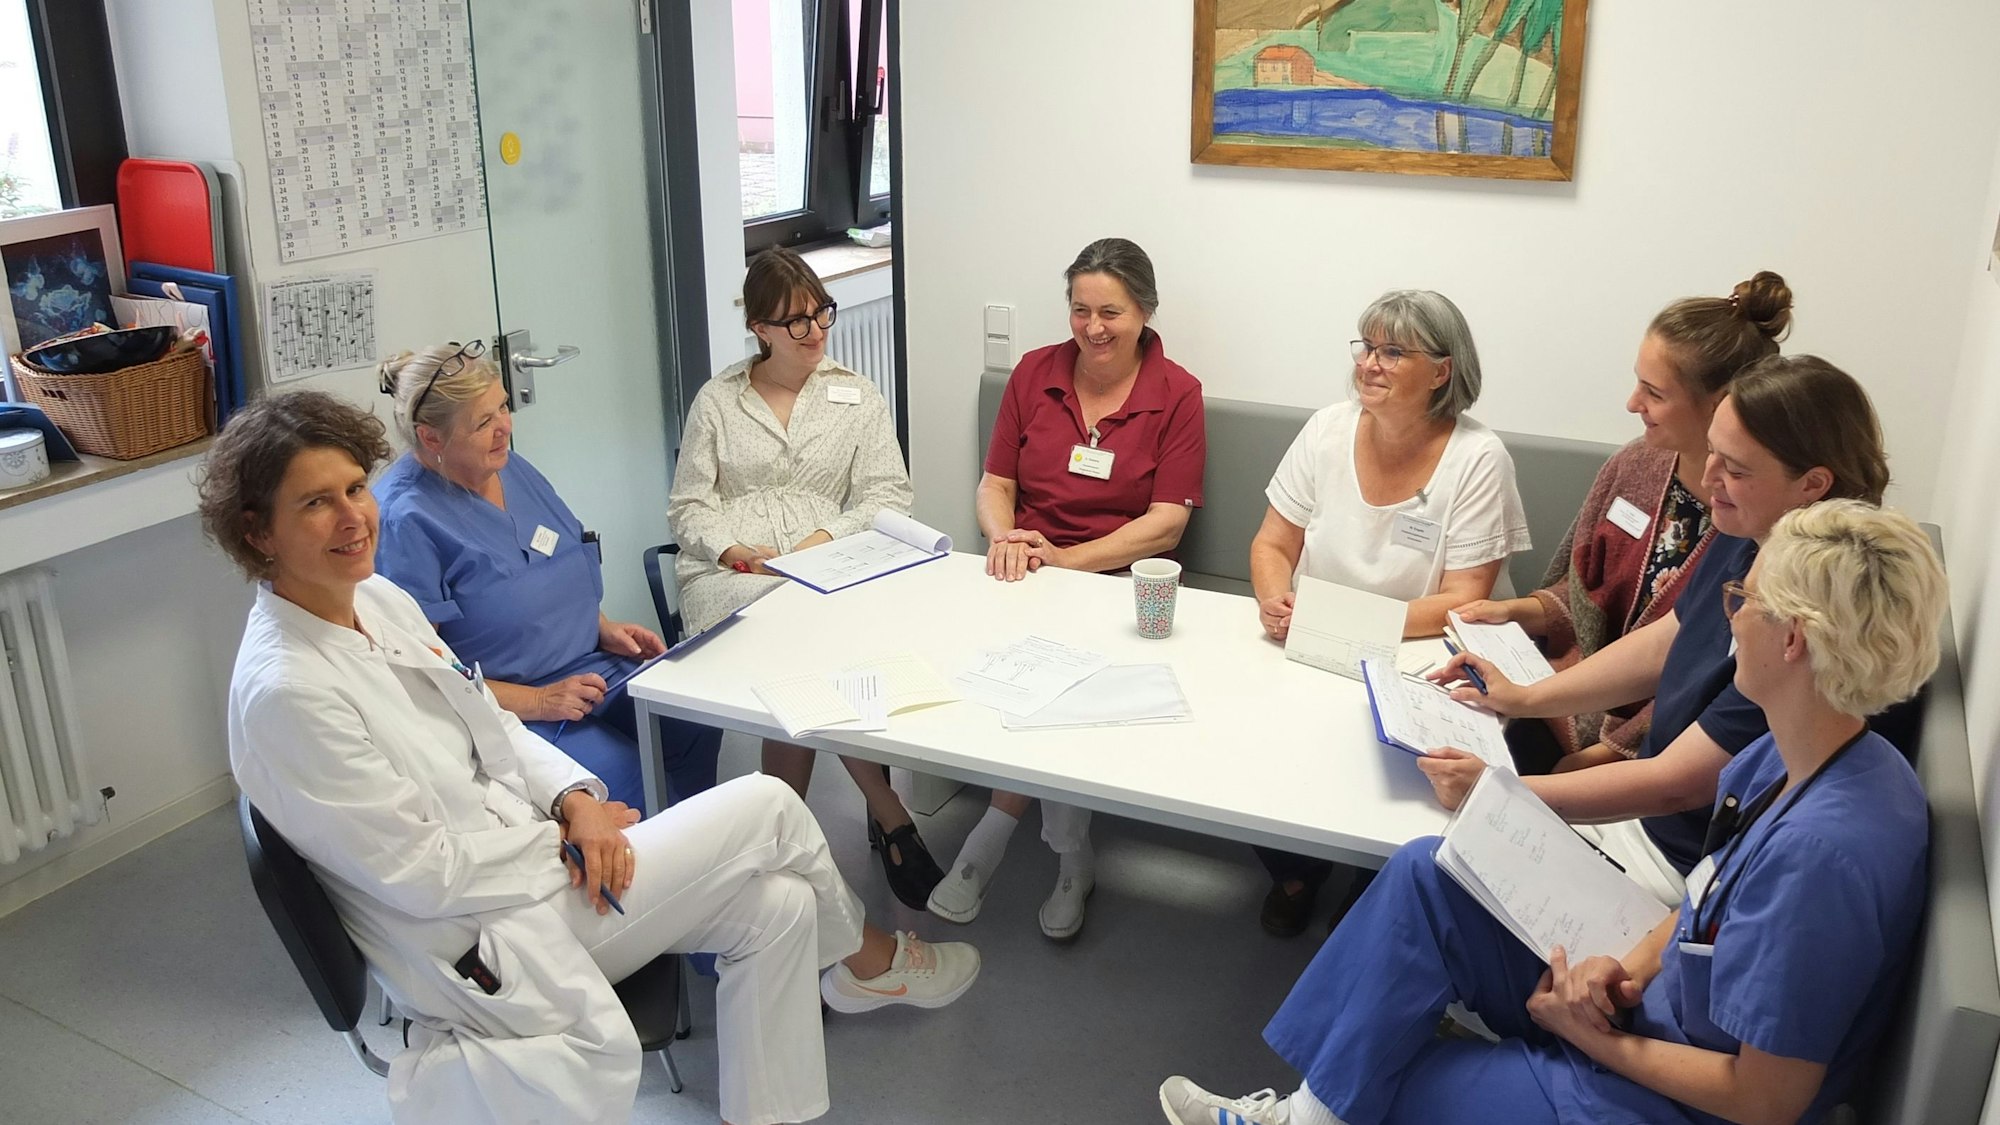 Acht Frauen, eine davon im Arztkittel, viele in Schwesternkleidung, sitzen um einen Tisch und haben Unterlagen vor sich.